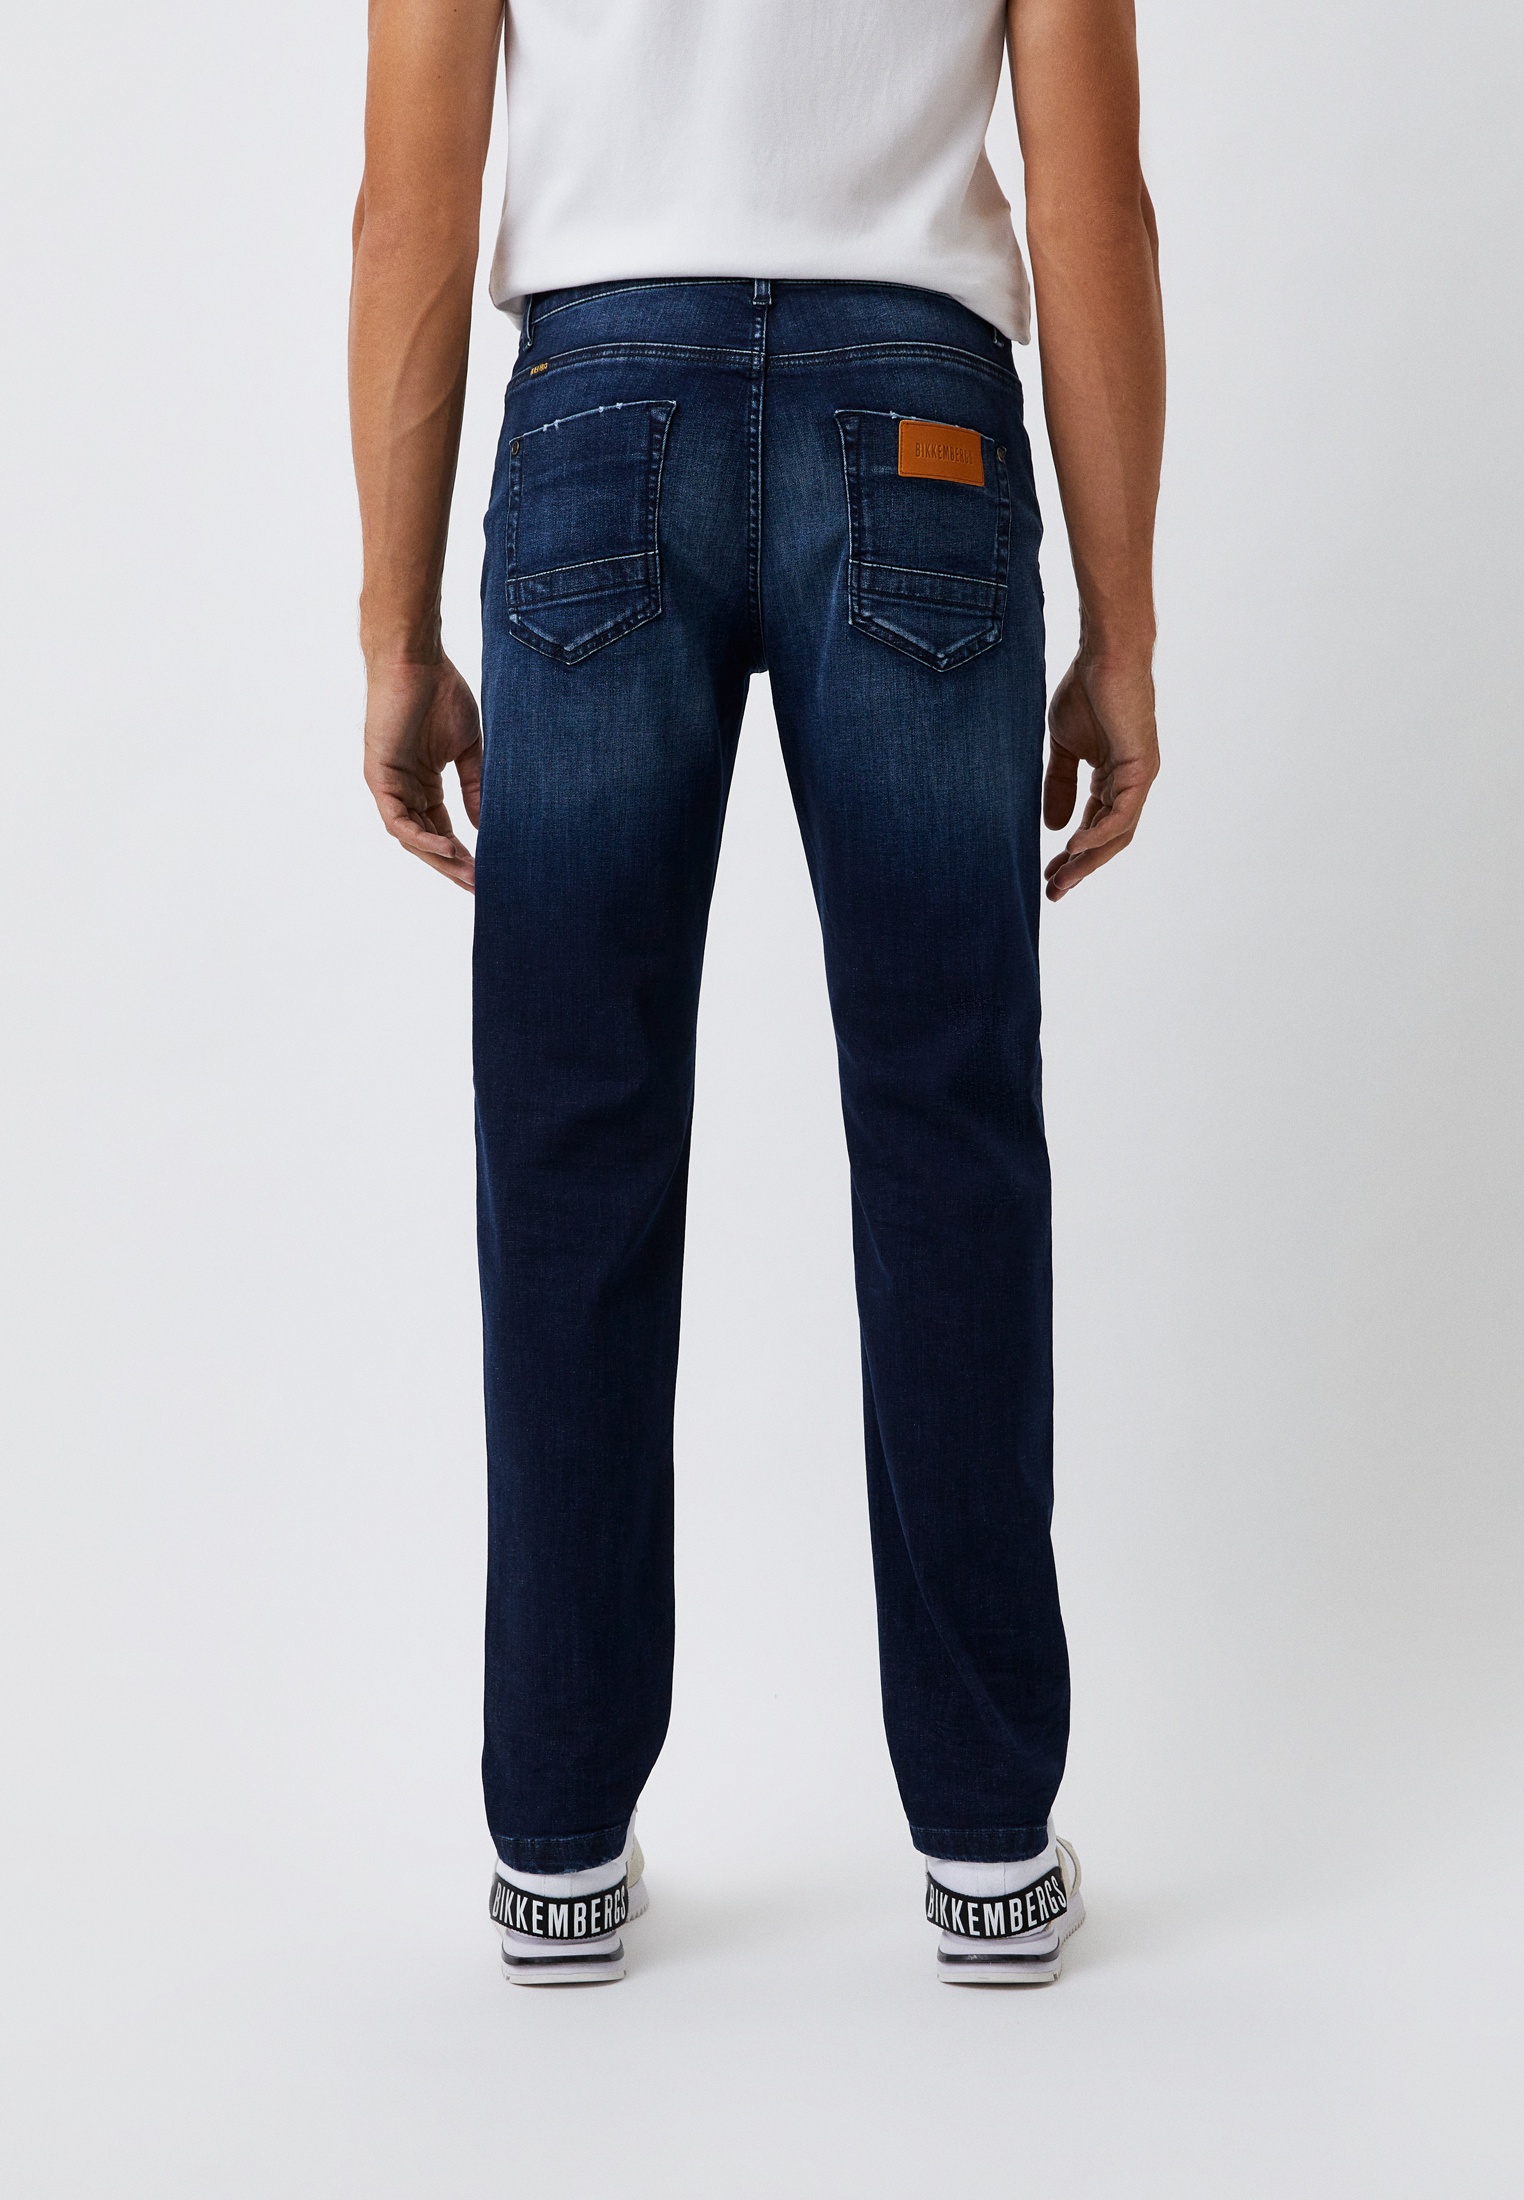 Мужские прямые джинсы Bikkembergs (Биккембергс) C Q 112 01 S 3511: изображение 13